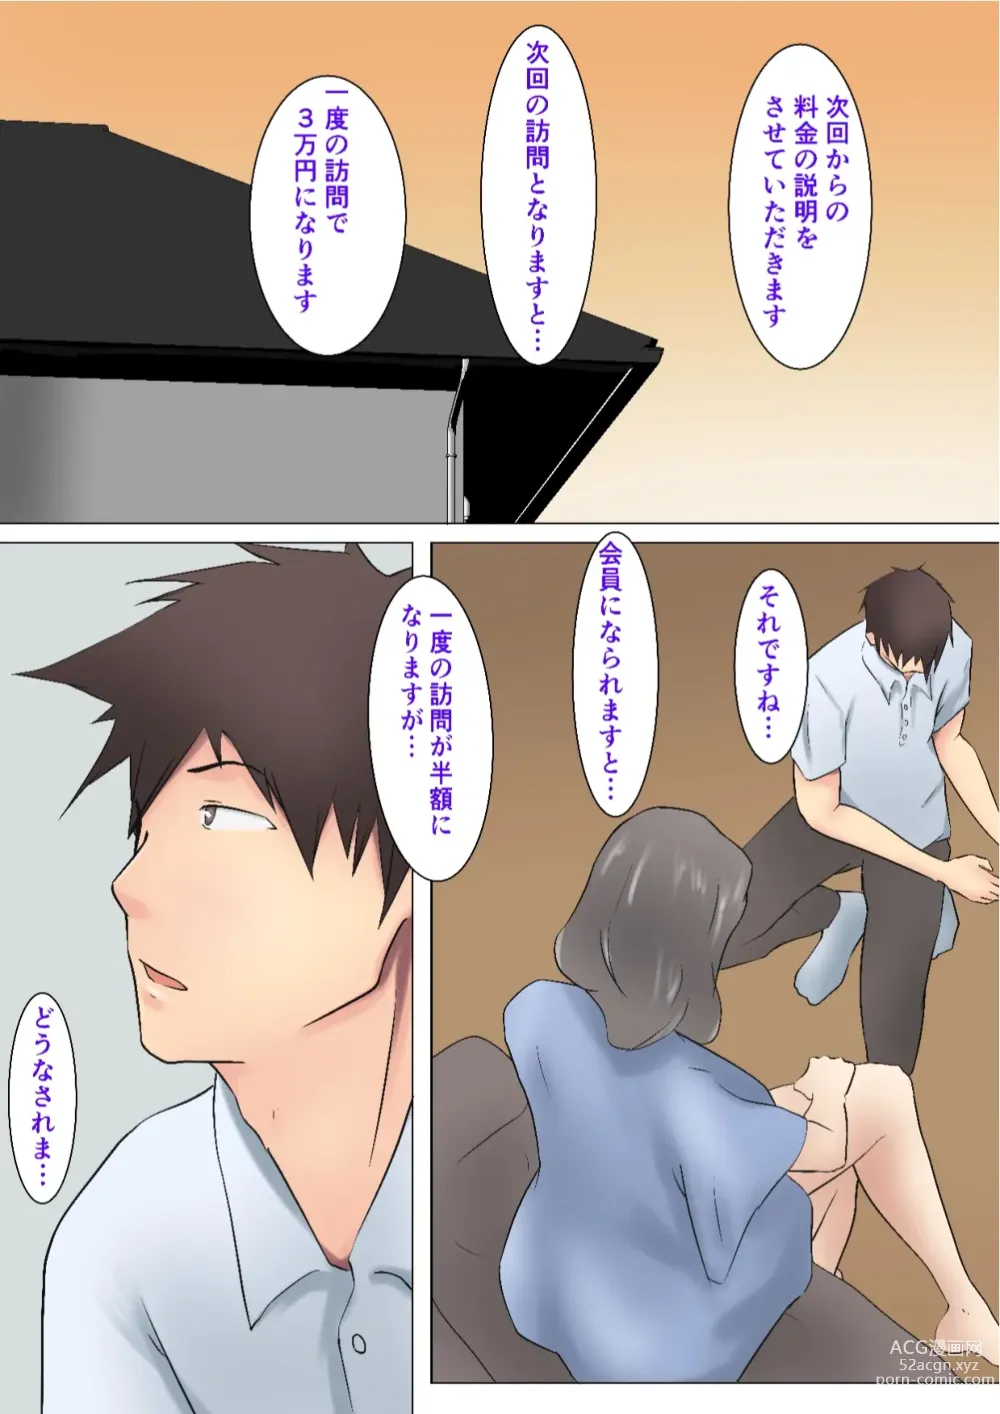 Page 31 of doujinshi Musoji kara Ukerareru Sei Service Delivery Helper